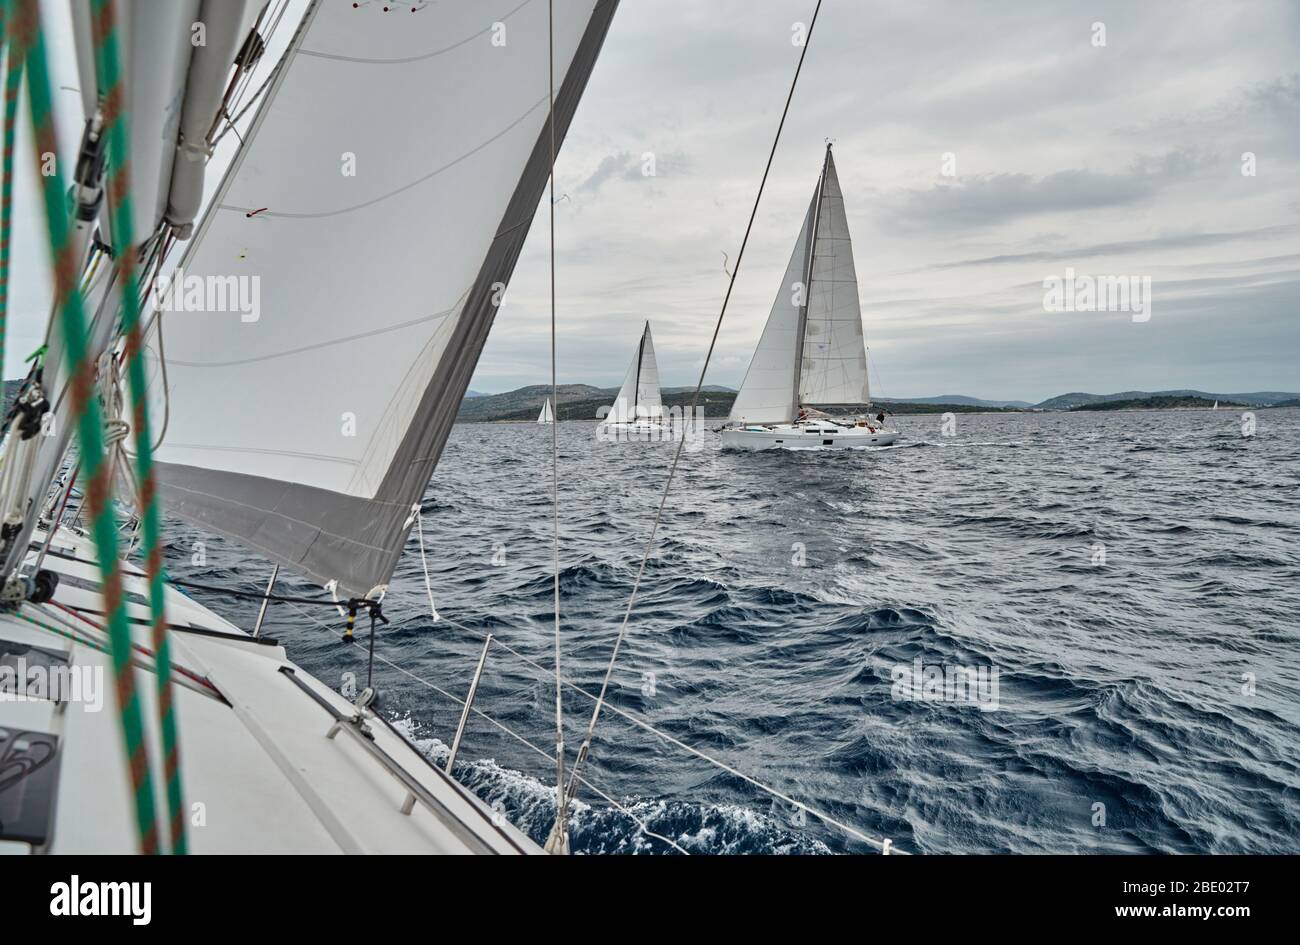 Kroatien, Adria, 19. September 2019: Das Rennen der Segelboote, sitzt das Team am Rande eines Bootstafel, helle Farben, Blick der Teilnehmer Stockfoto